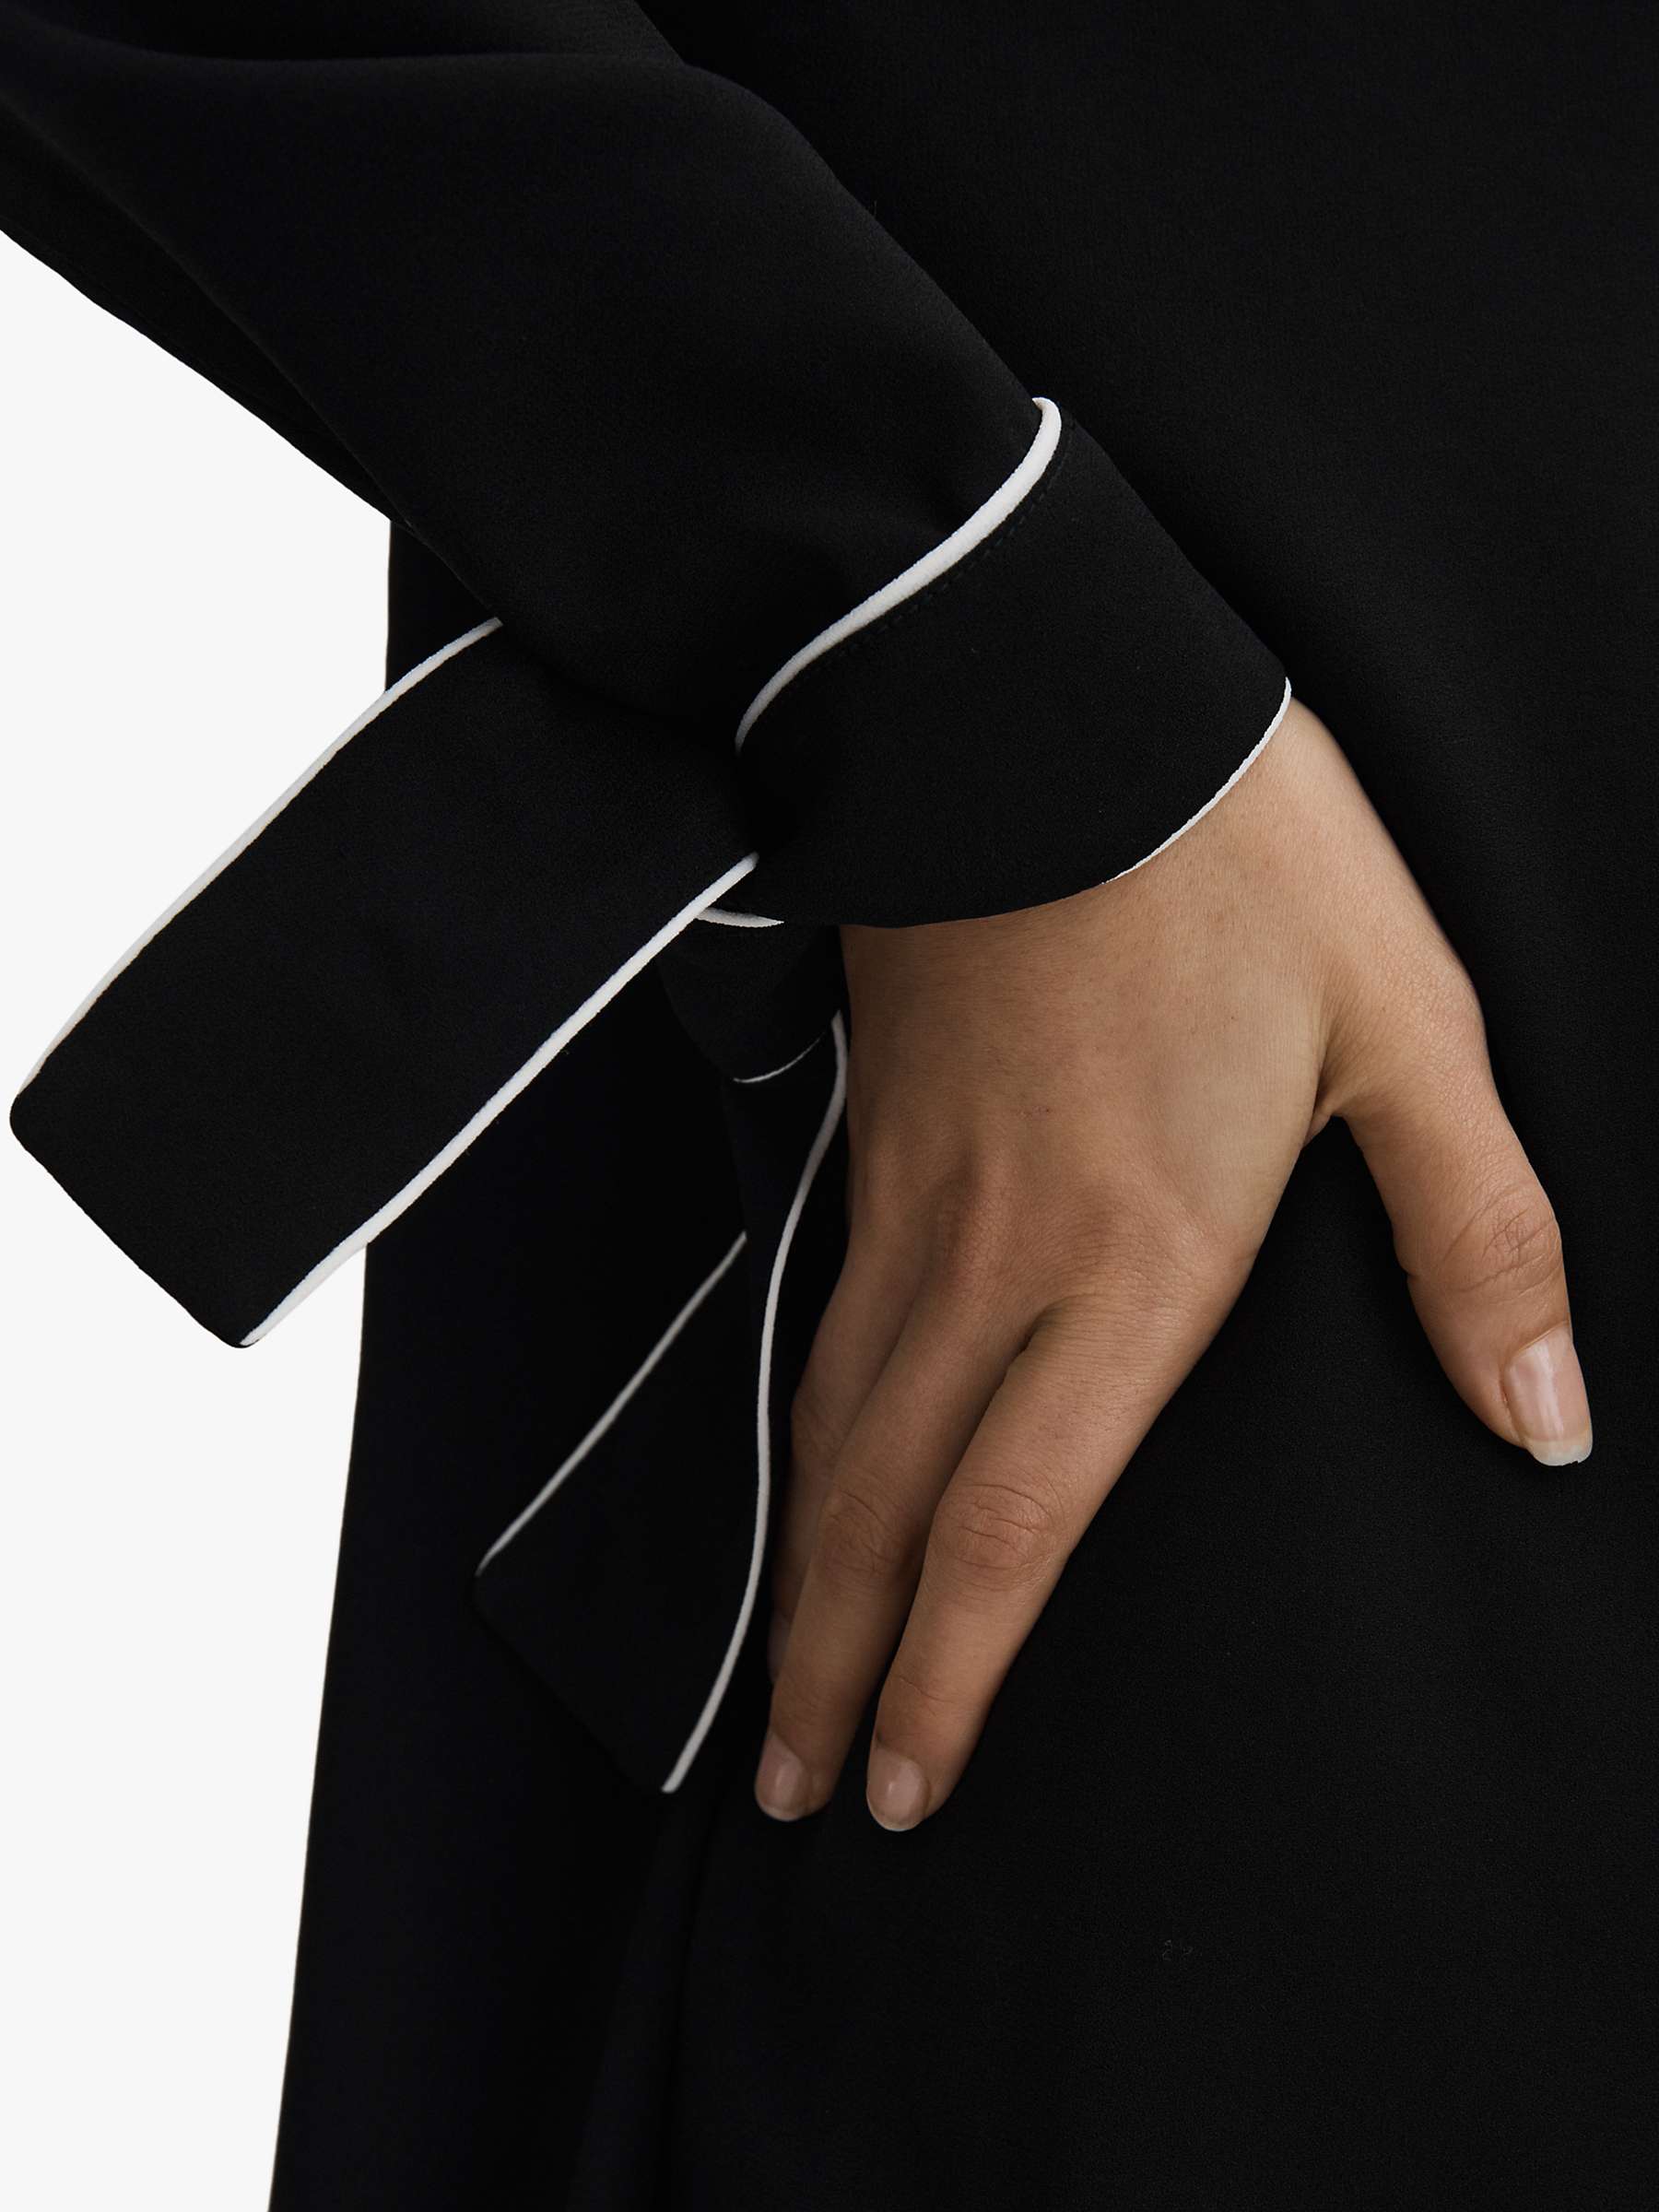 Buy Reiss Eloise Tipped Mini Dress, Black/White Online at johnlewis.com